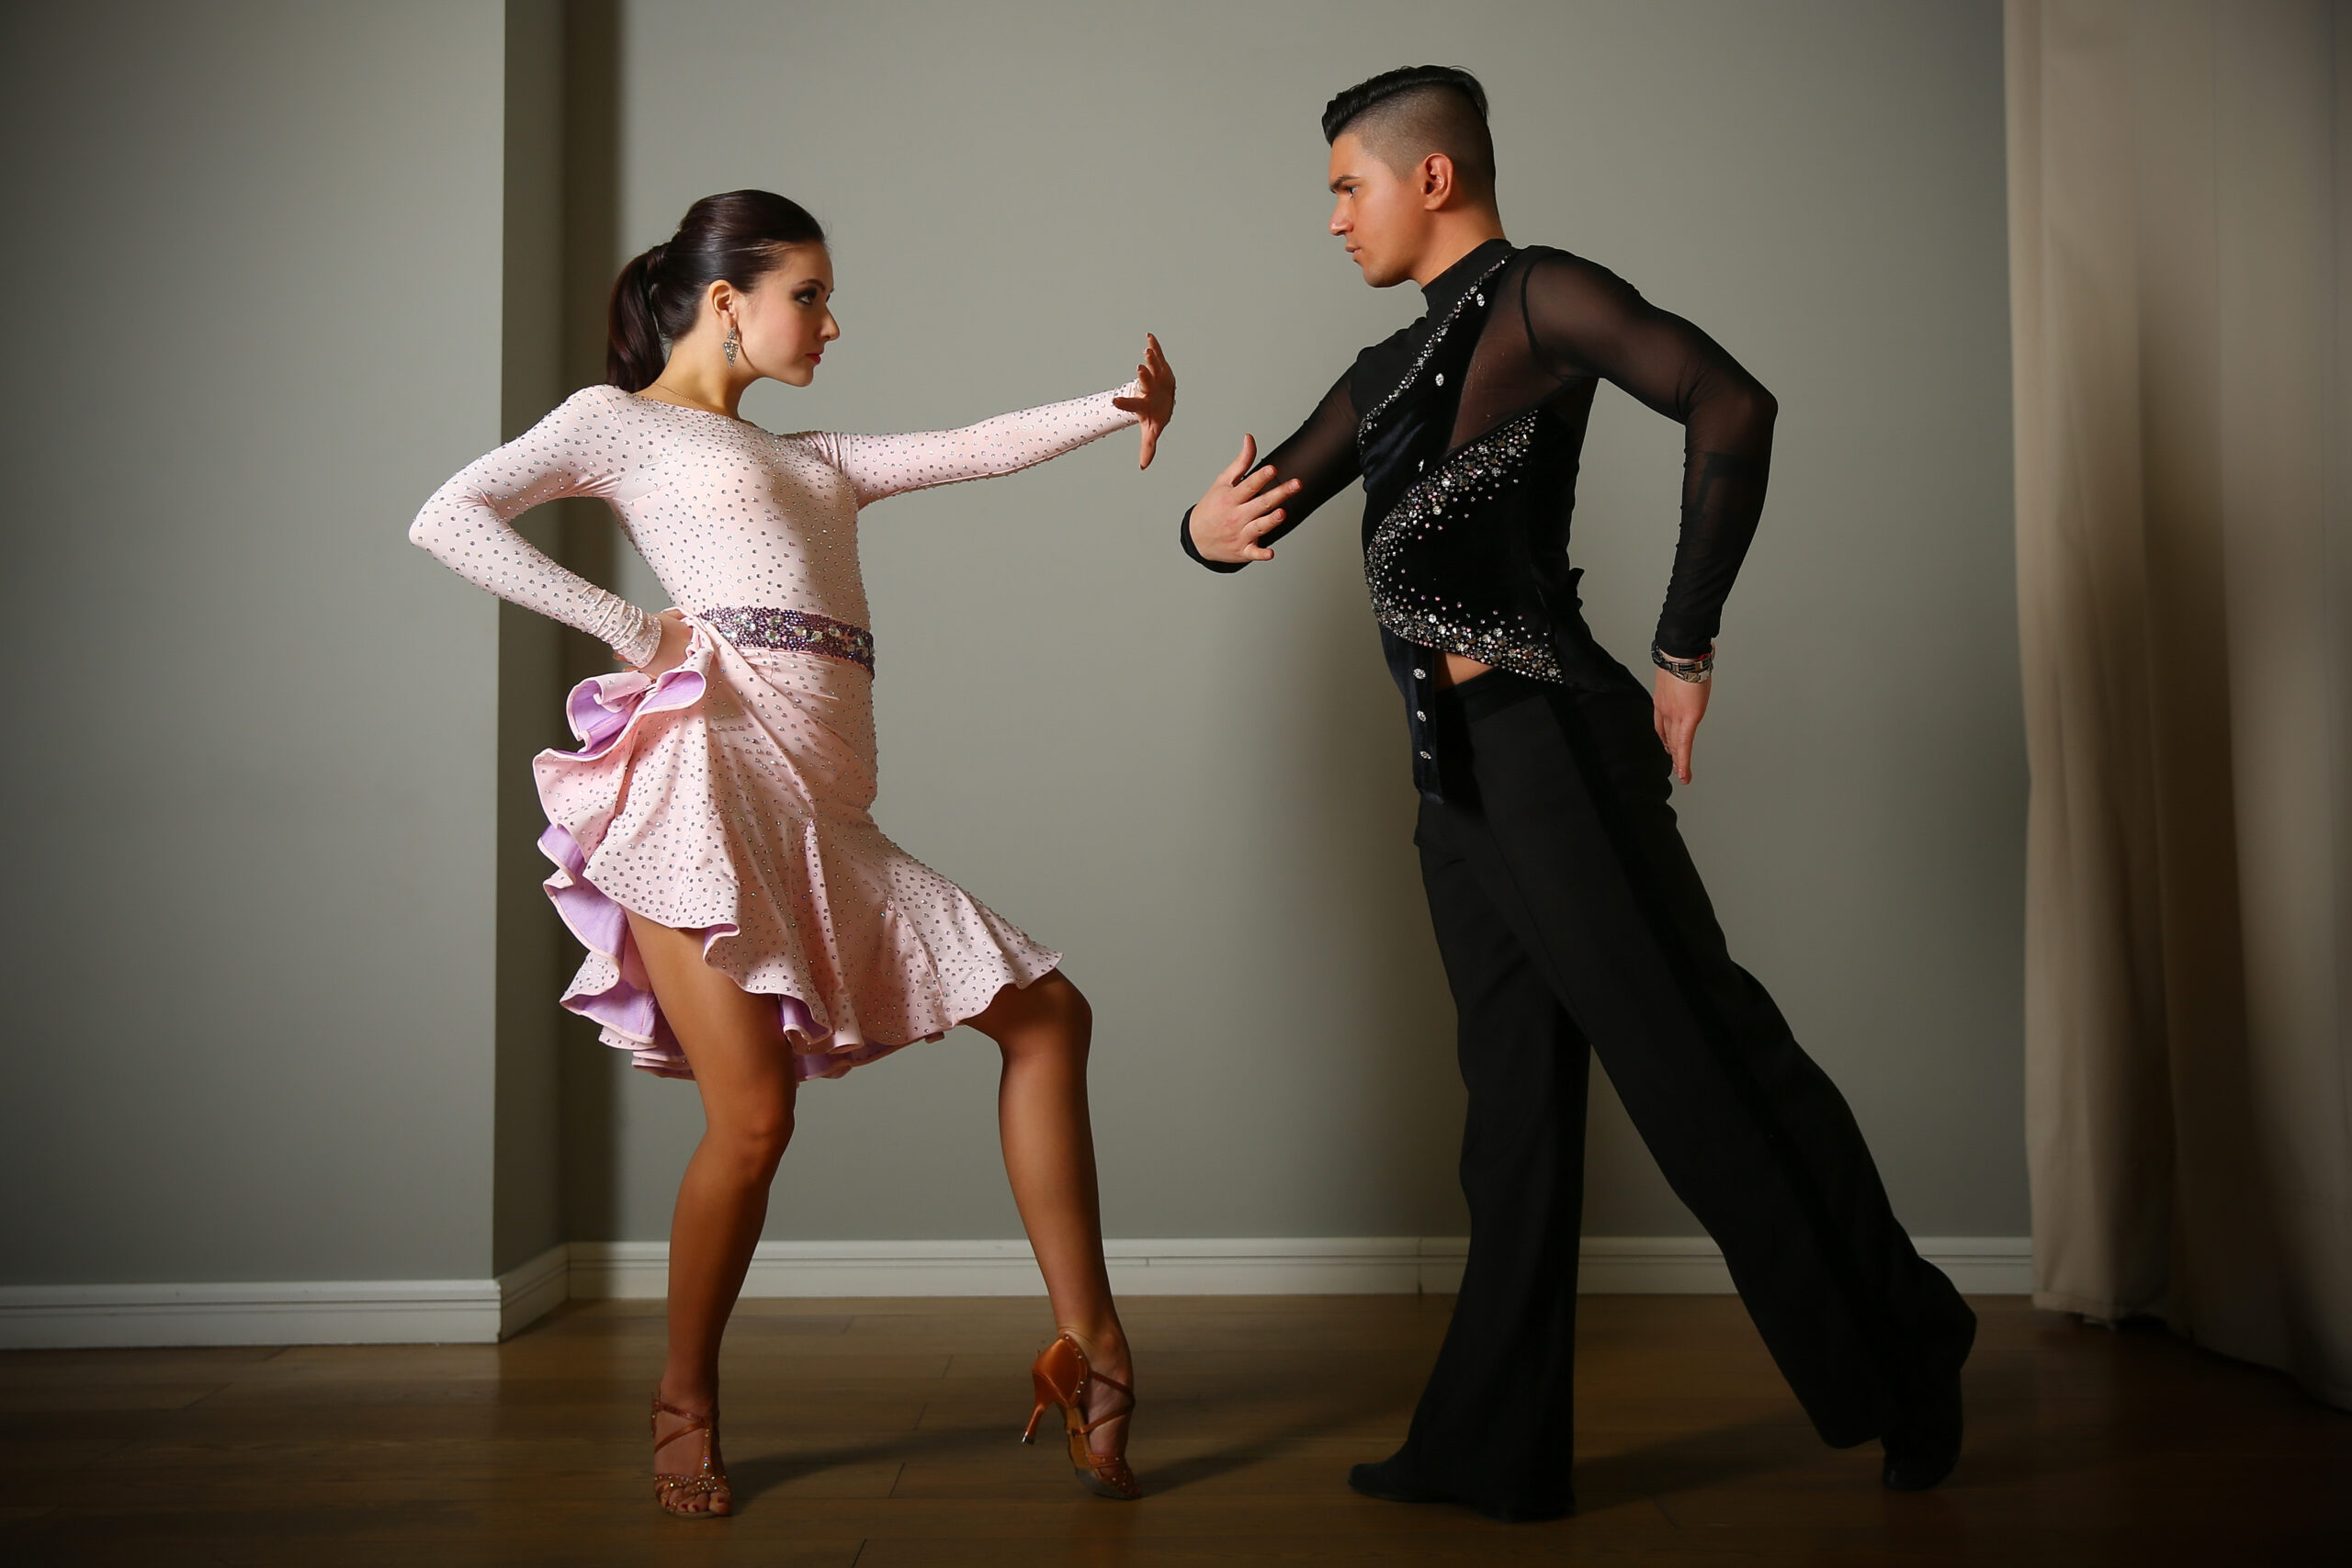 情熱とドラマの舞台 – 社交ダンス、パソドブレの魅力を探る